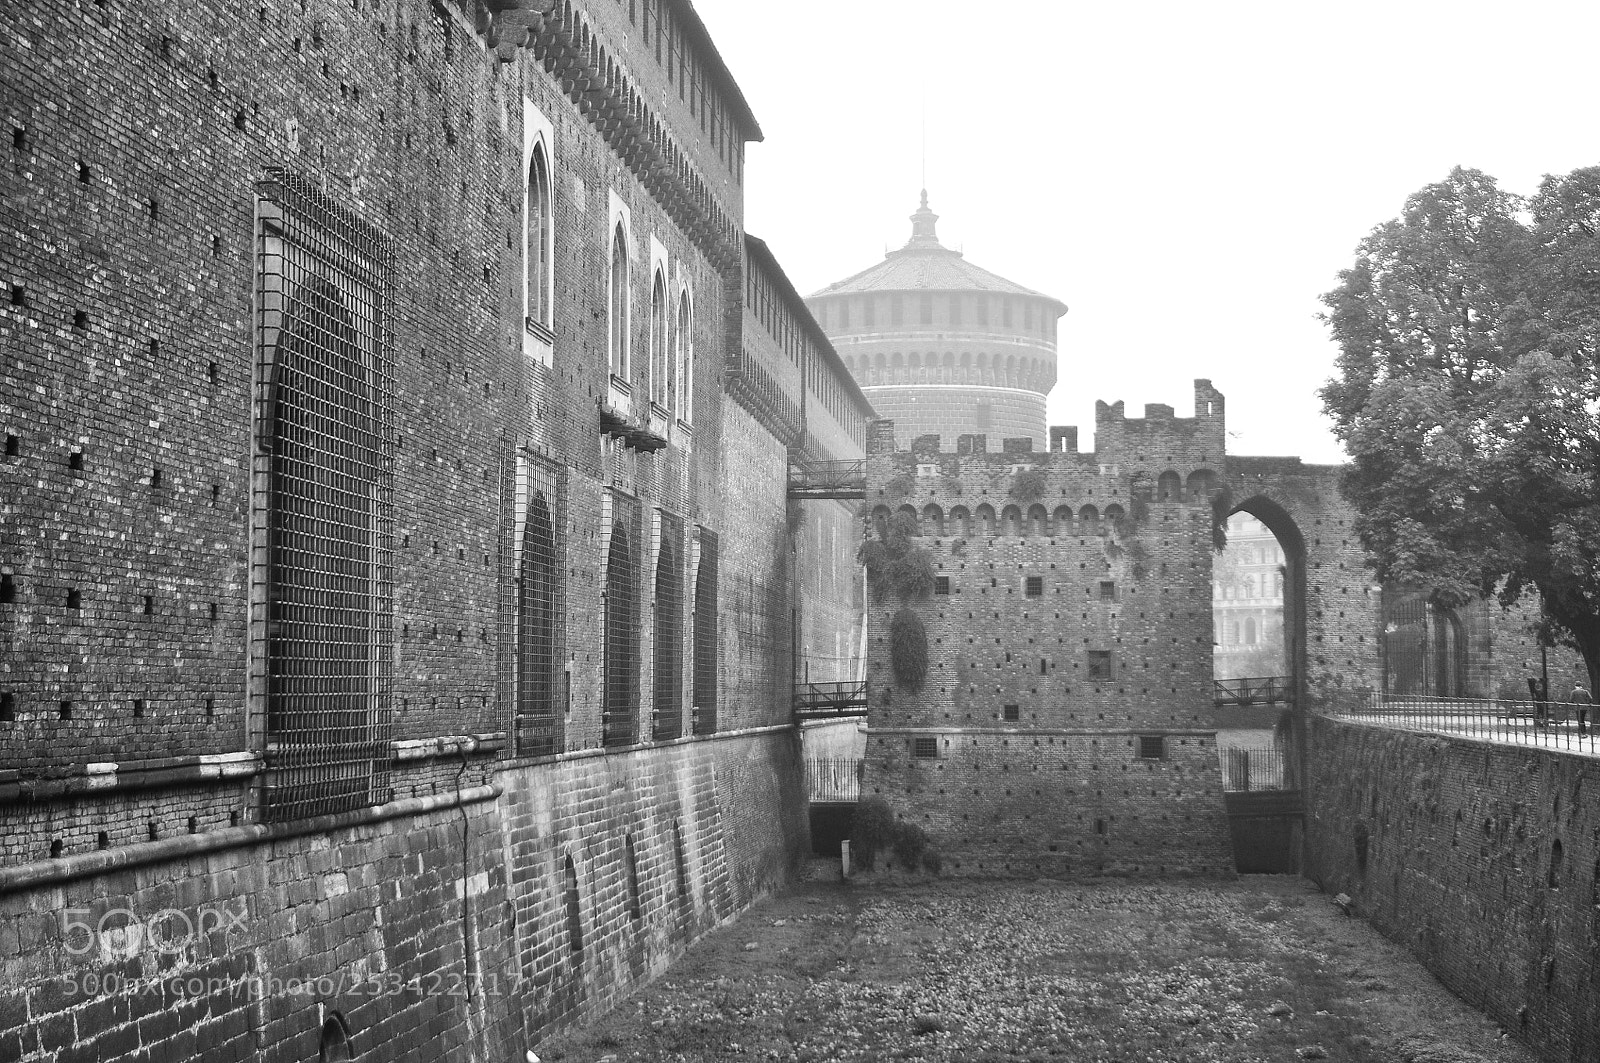 Nikon D90 sample photo. Foggy castle photography